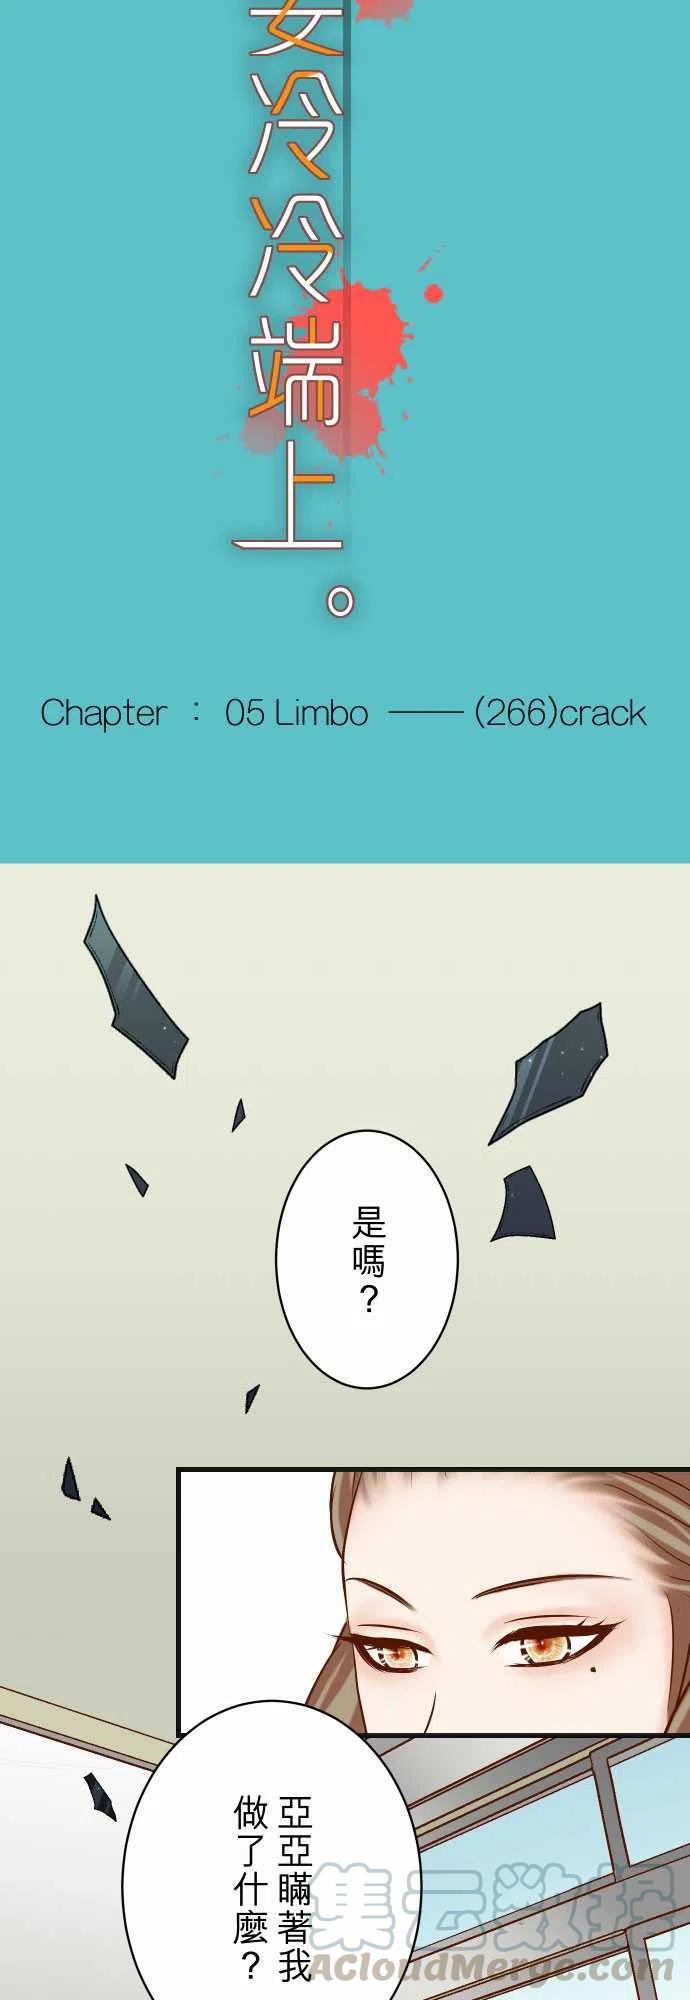 復仇要冷冷端上 - 第五章Limbo266-Crack - 3